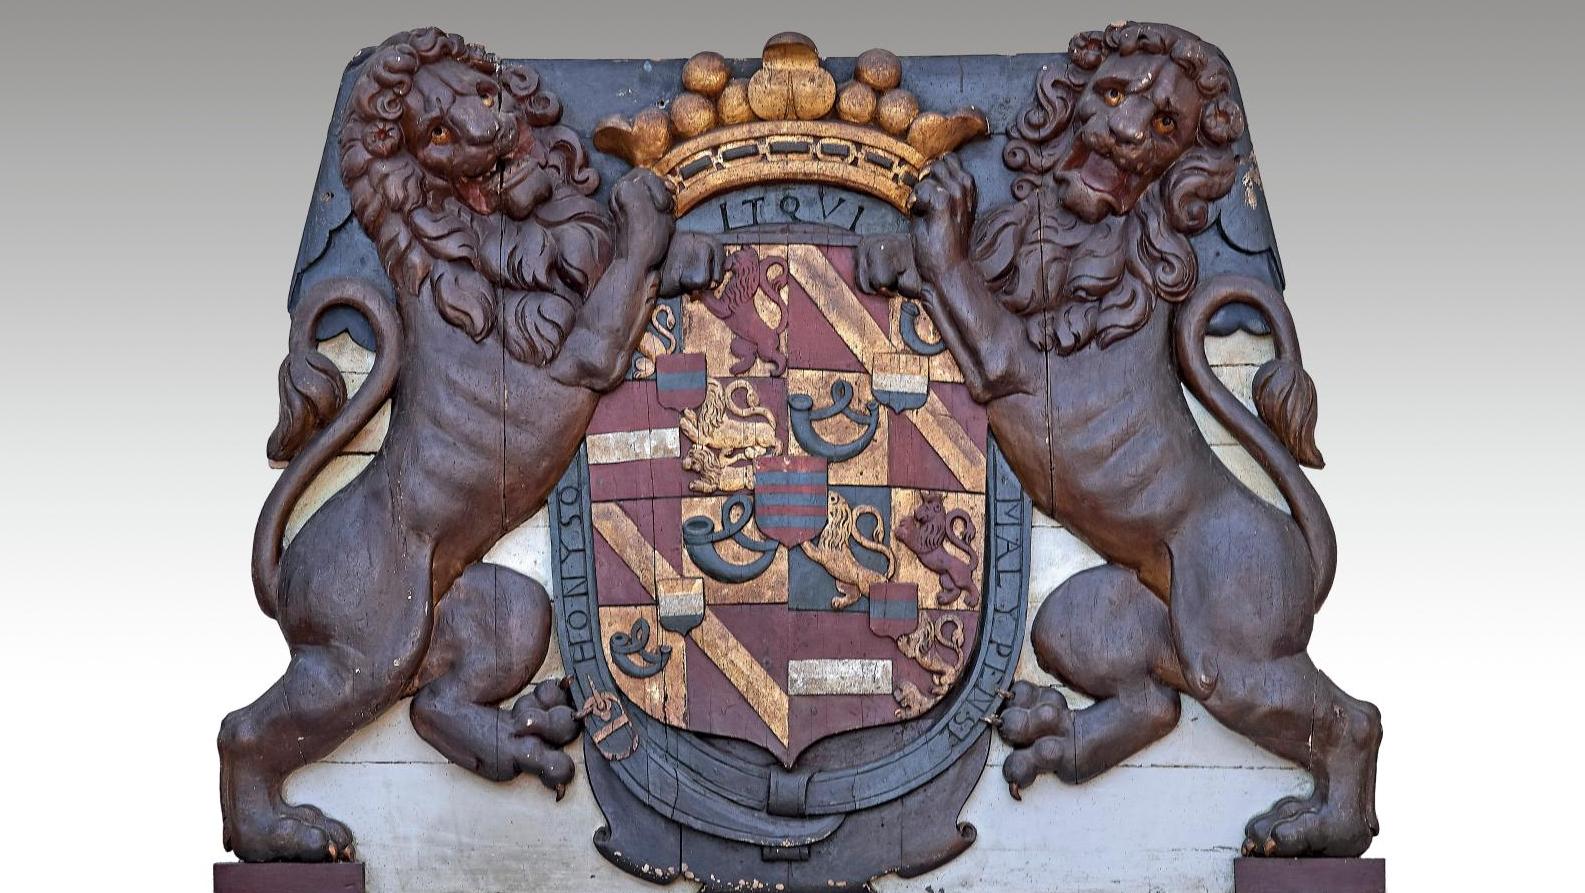 XVIIe siècle, figure de poupe d’un navire, bois polychrome et or représentant deux... Histoire et prestige au château de Paradis